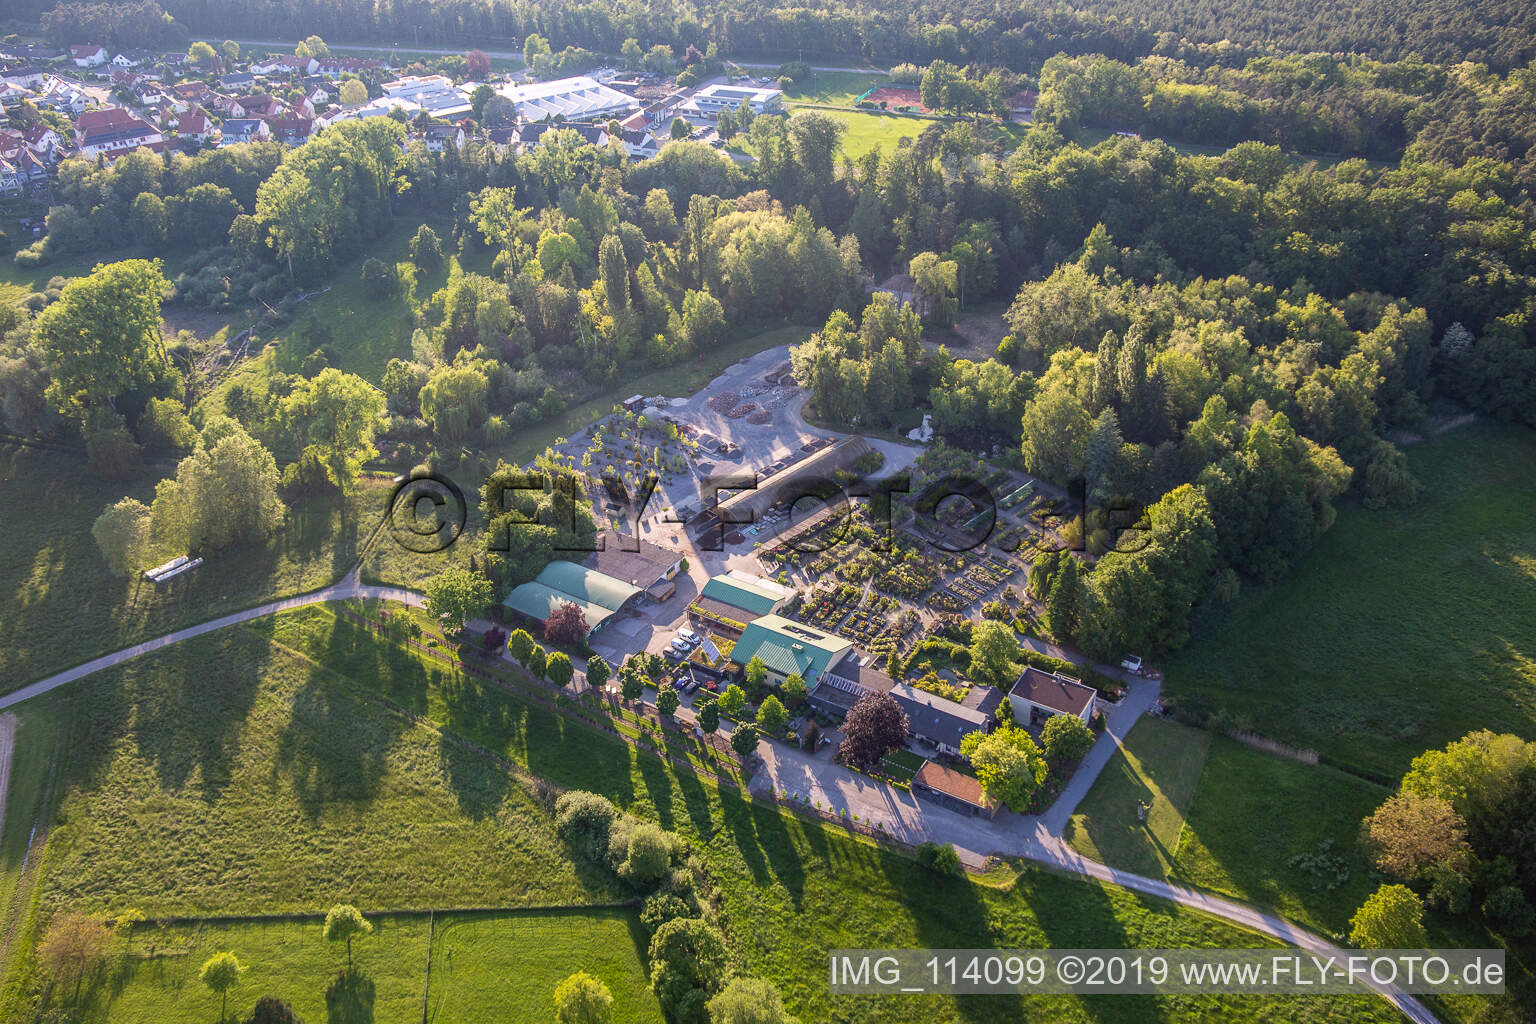 Bienwald Baumschule / Greentec in Berg im Bundesland Rheinland-Pfalz, Deutschland aus der Drohnenperspektive